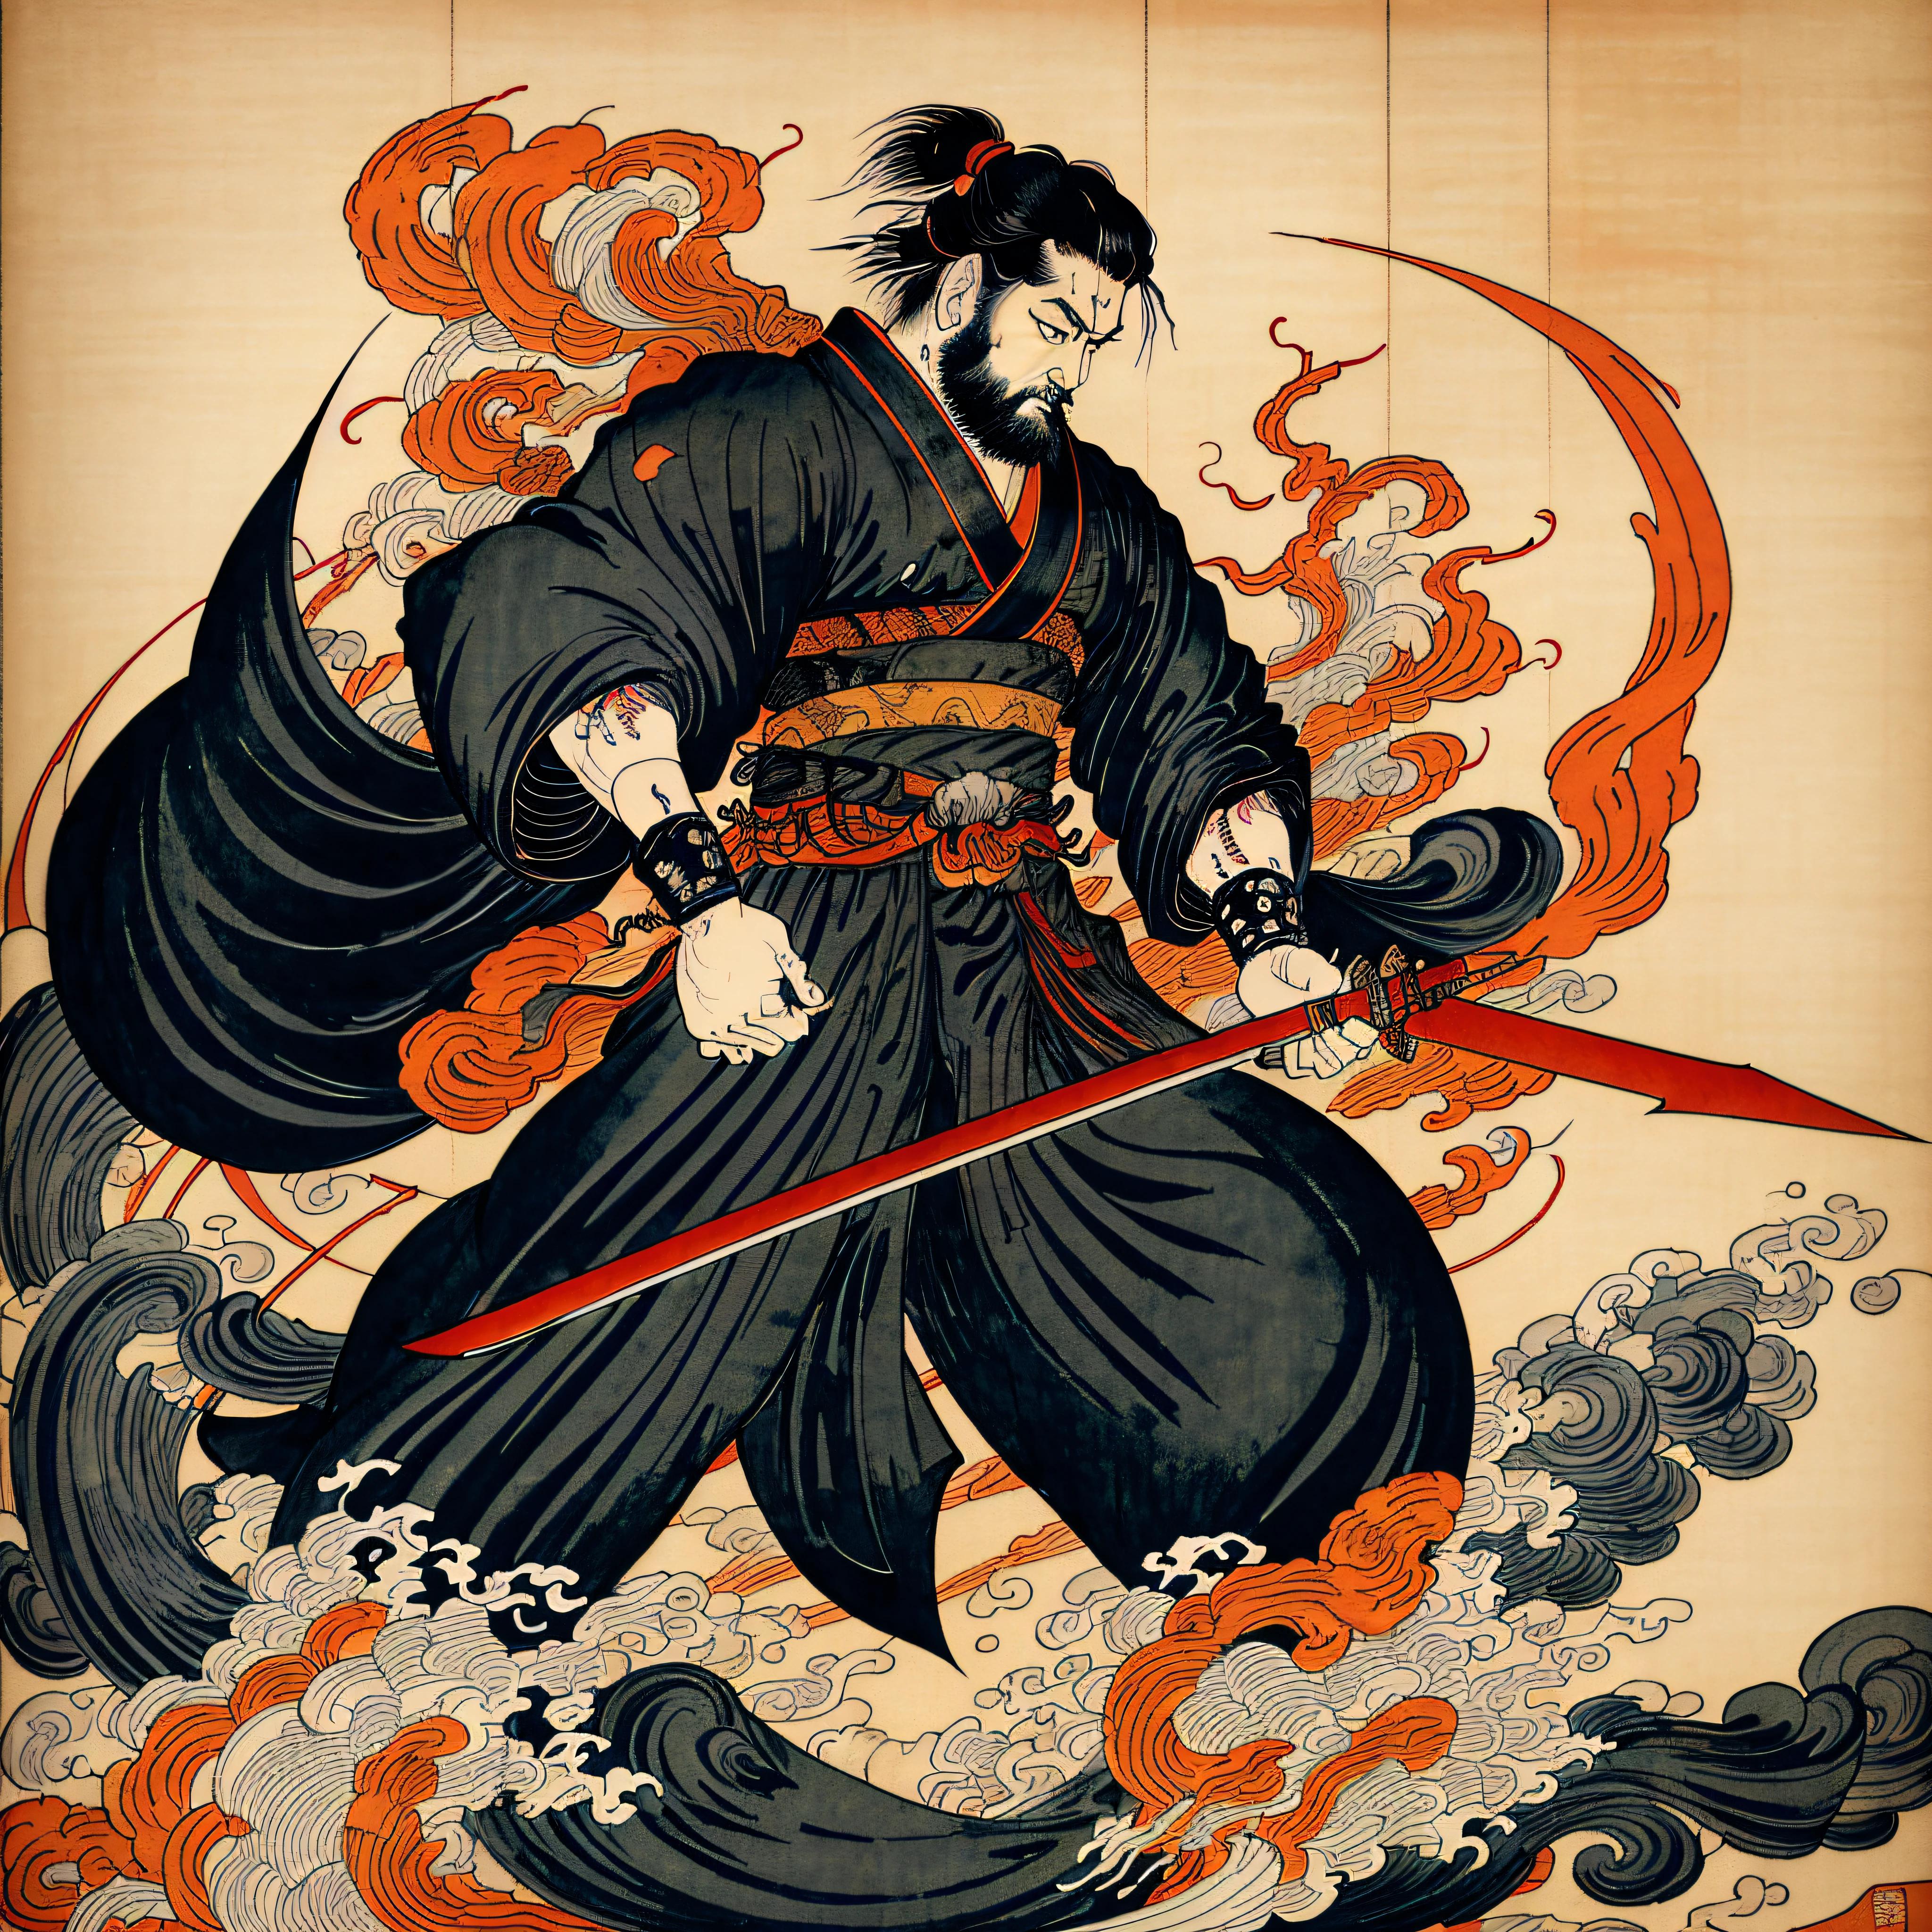 É uma pintura de corpo inteiro com cores naturais no estilo ukiyo-e. Um samurai japonês com um corpo grande como um homem forte. Ele tem um rosto áspero, cabelo preto curto, e um curto, barba aparada. Ele usa um quimono preto. O hakama deve ser um pouco mais longo e desenhado em uma forma fluida que flutua ao vento. Ele segura uma espada na mão direita com chamas saindo de sua espada japonesa. O fundo é uma chama rodopiante no estilo Katsushika Hokusai. Obra-prima do estilo ukiyo-e de alta resolução, com a mais alta qualidade --auto --s2